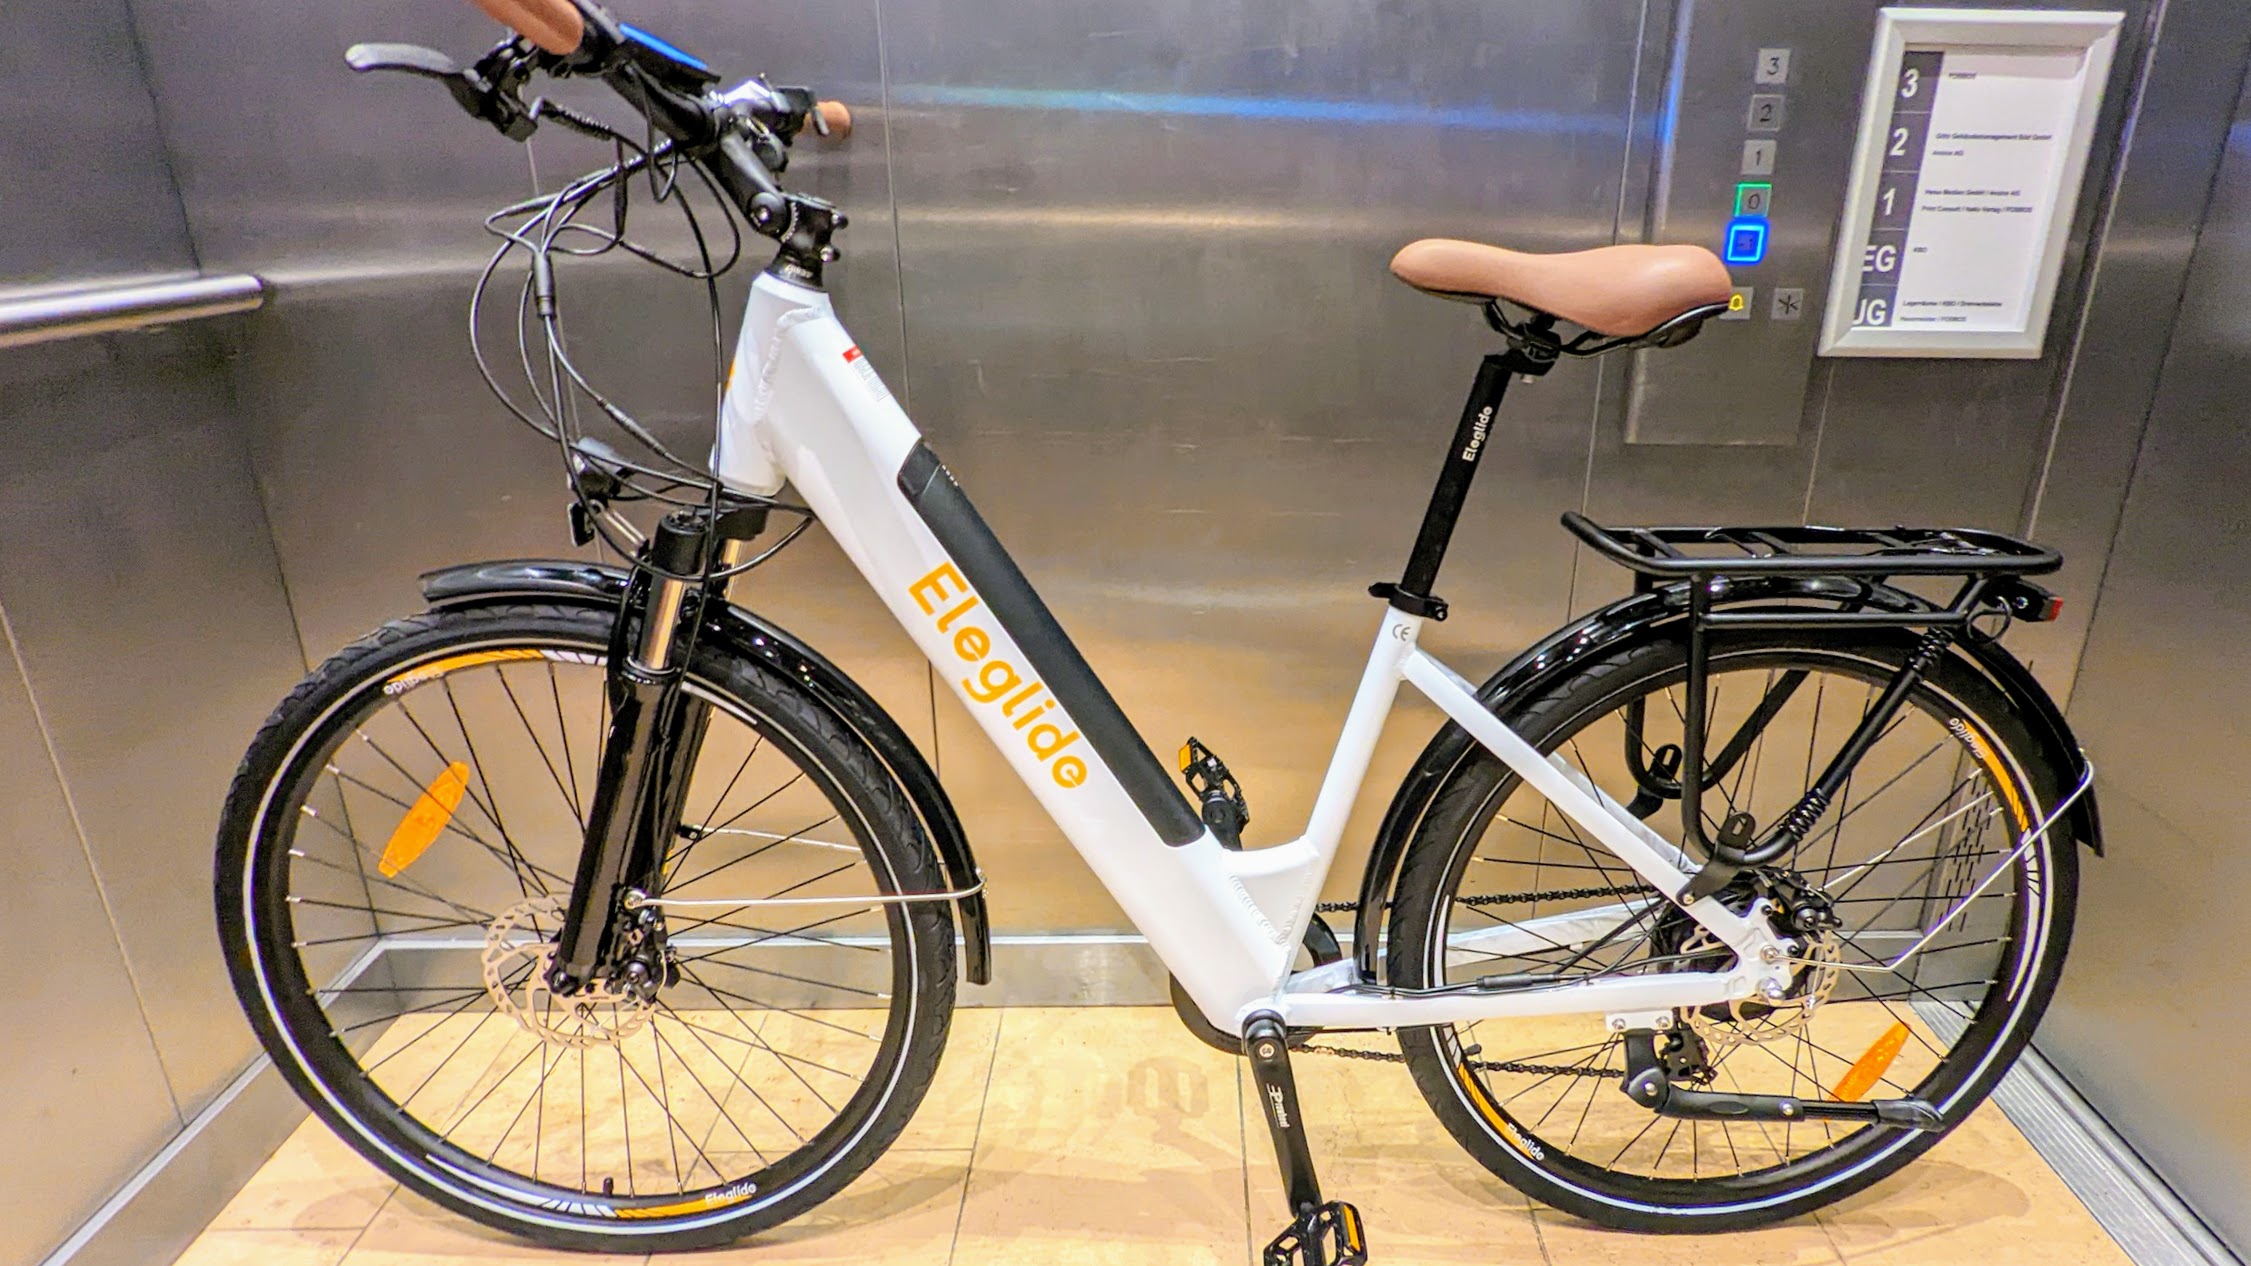 Ab 777 Euro: So viel kostet ein gutes E-Bike für die City | TechStage